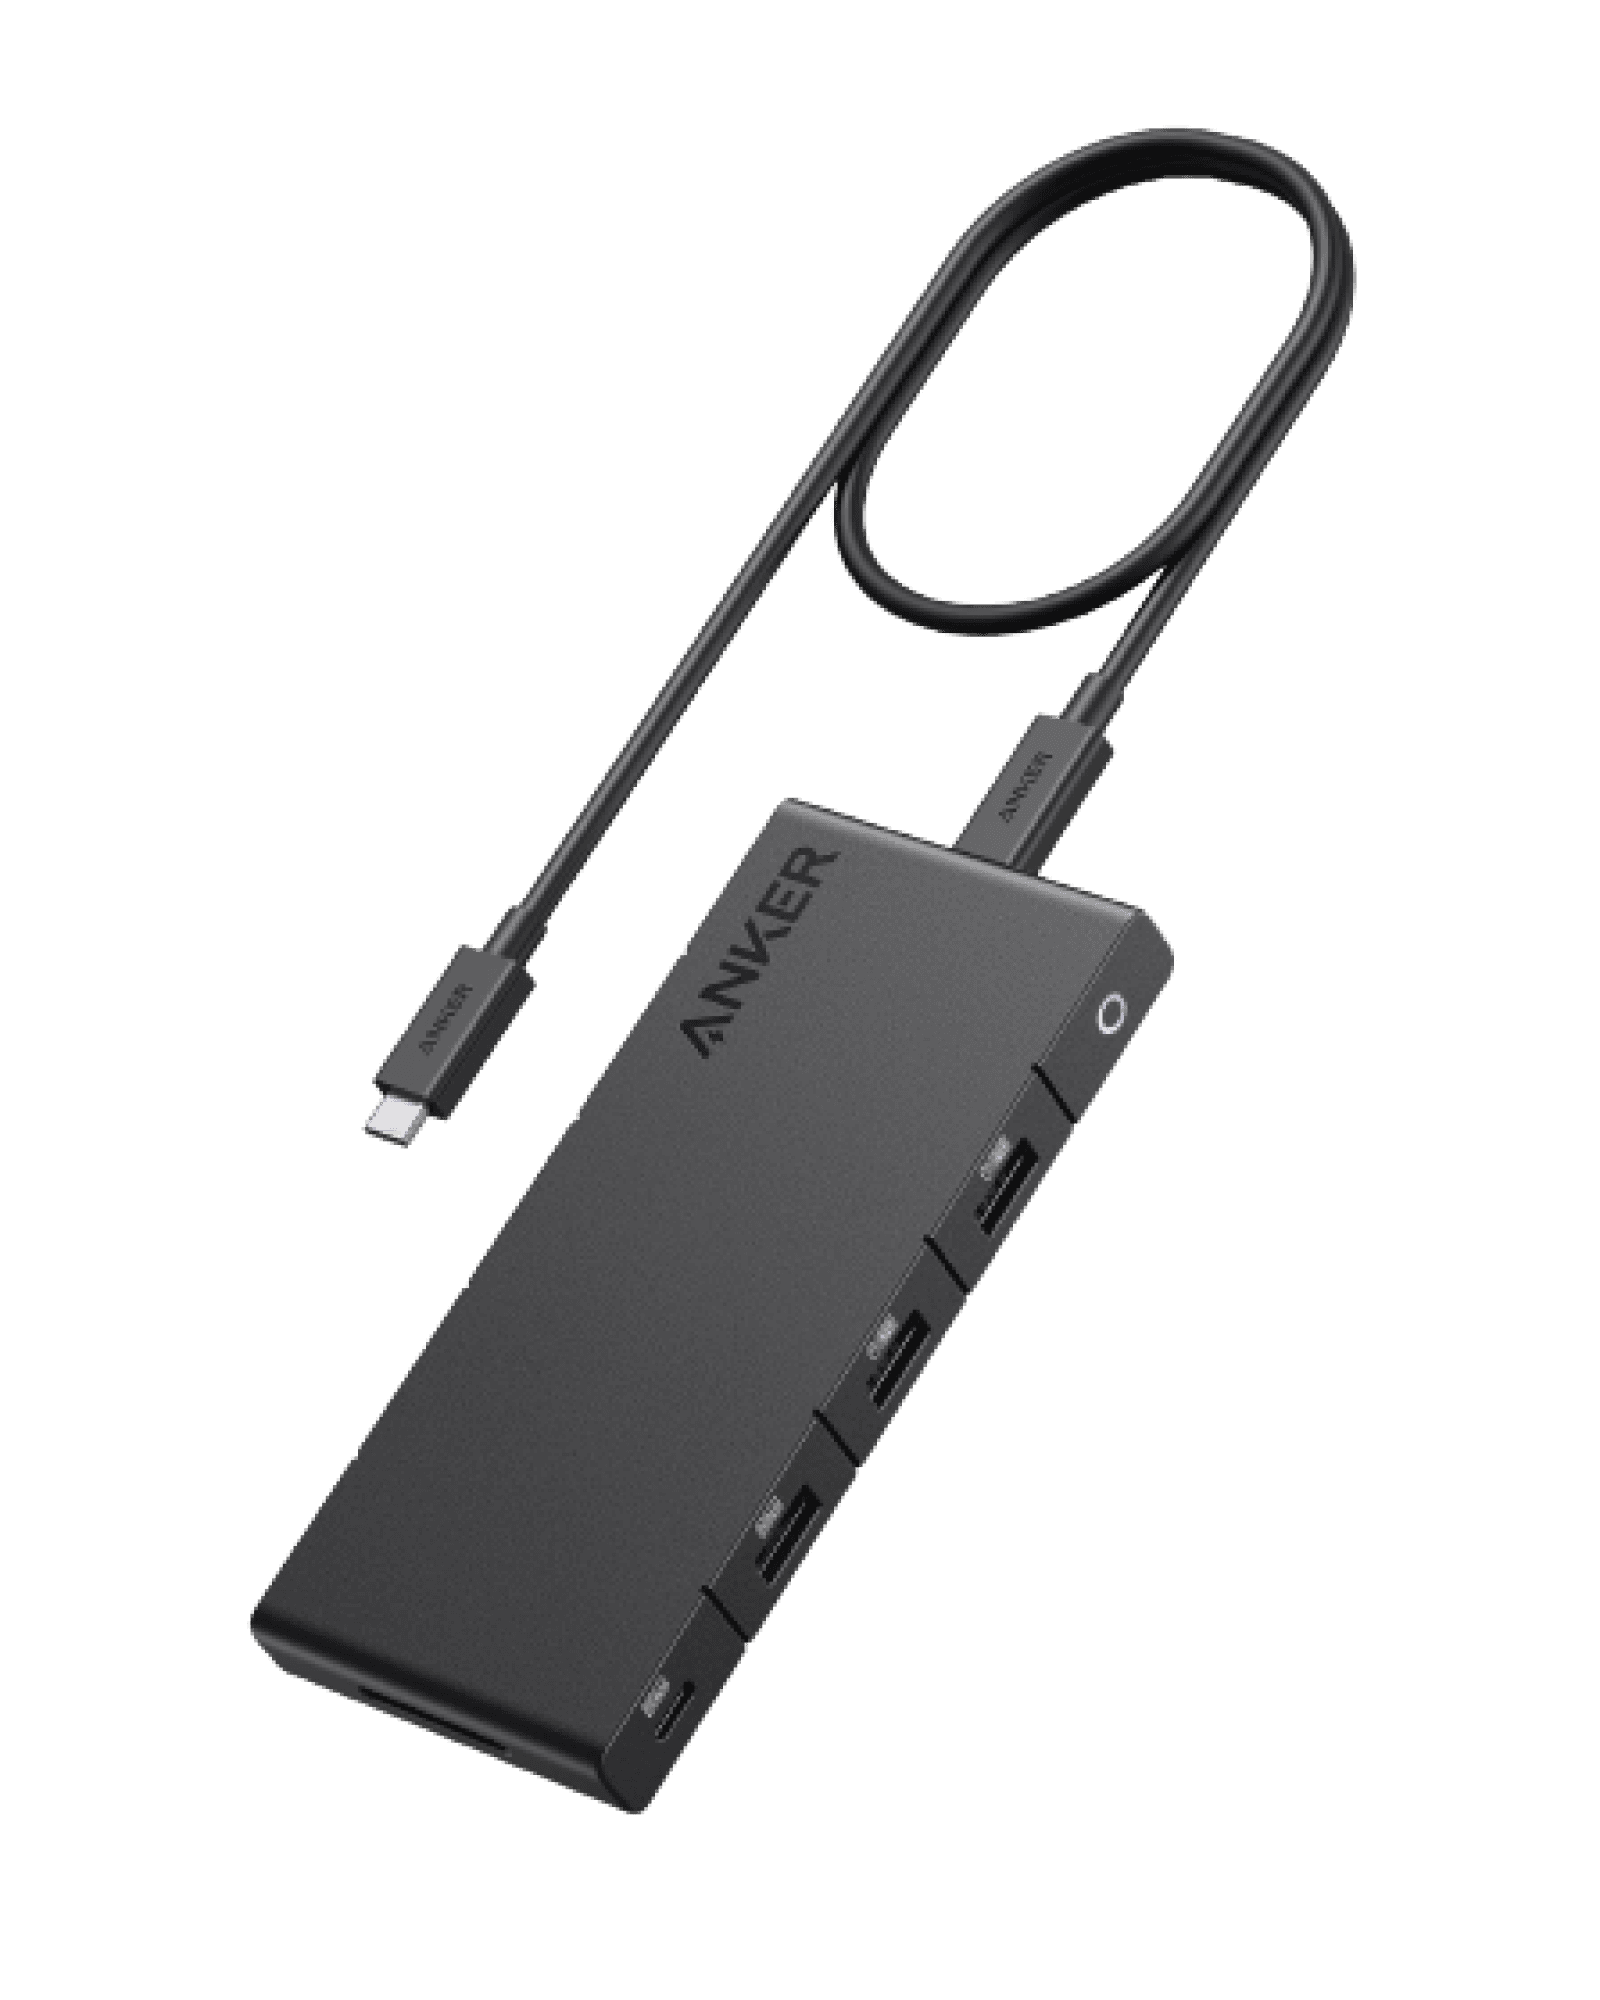 Anker <b>364</b> USB-C Hub (10-in-1, Dual 4K HDMI)